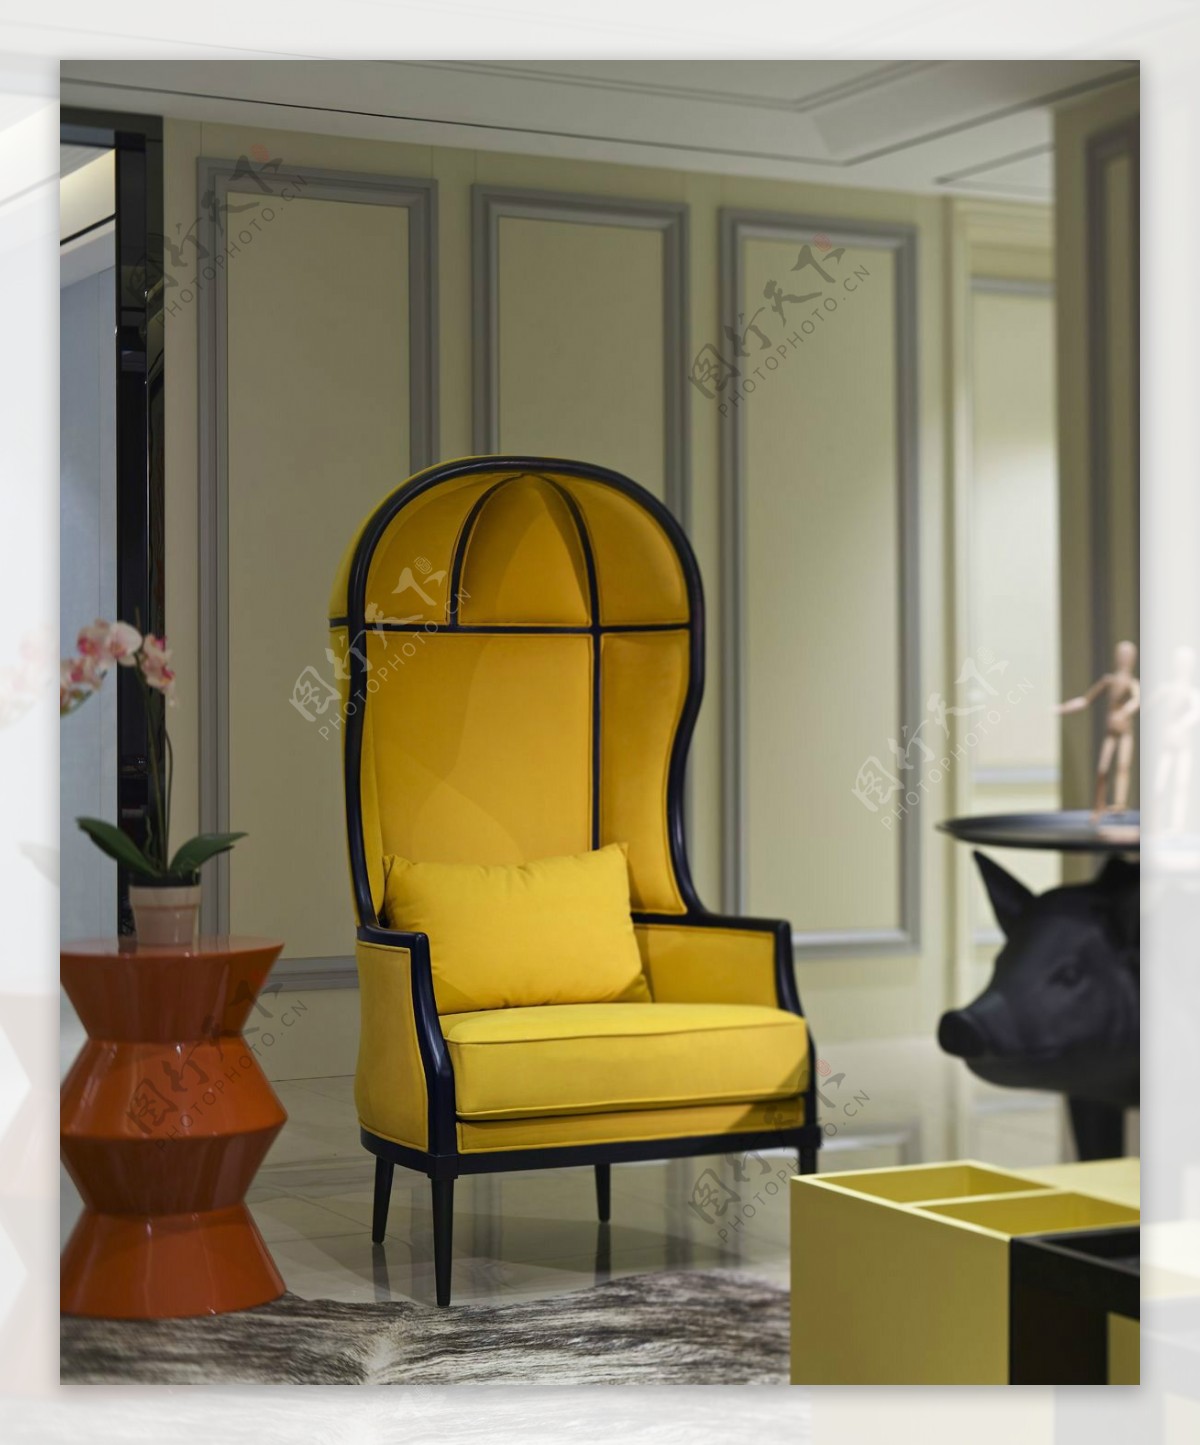 室内艺术客厅座椅装饰效果设计